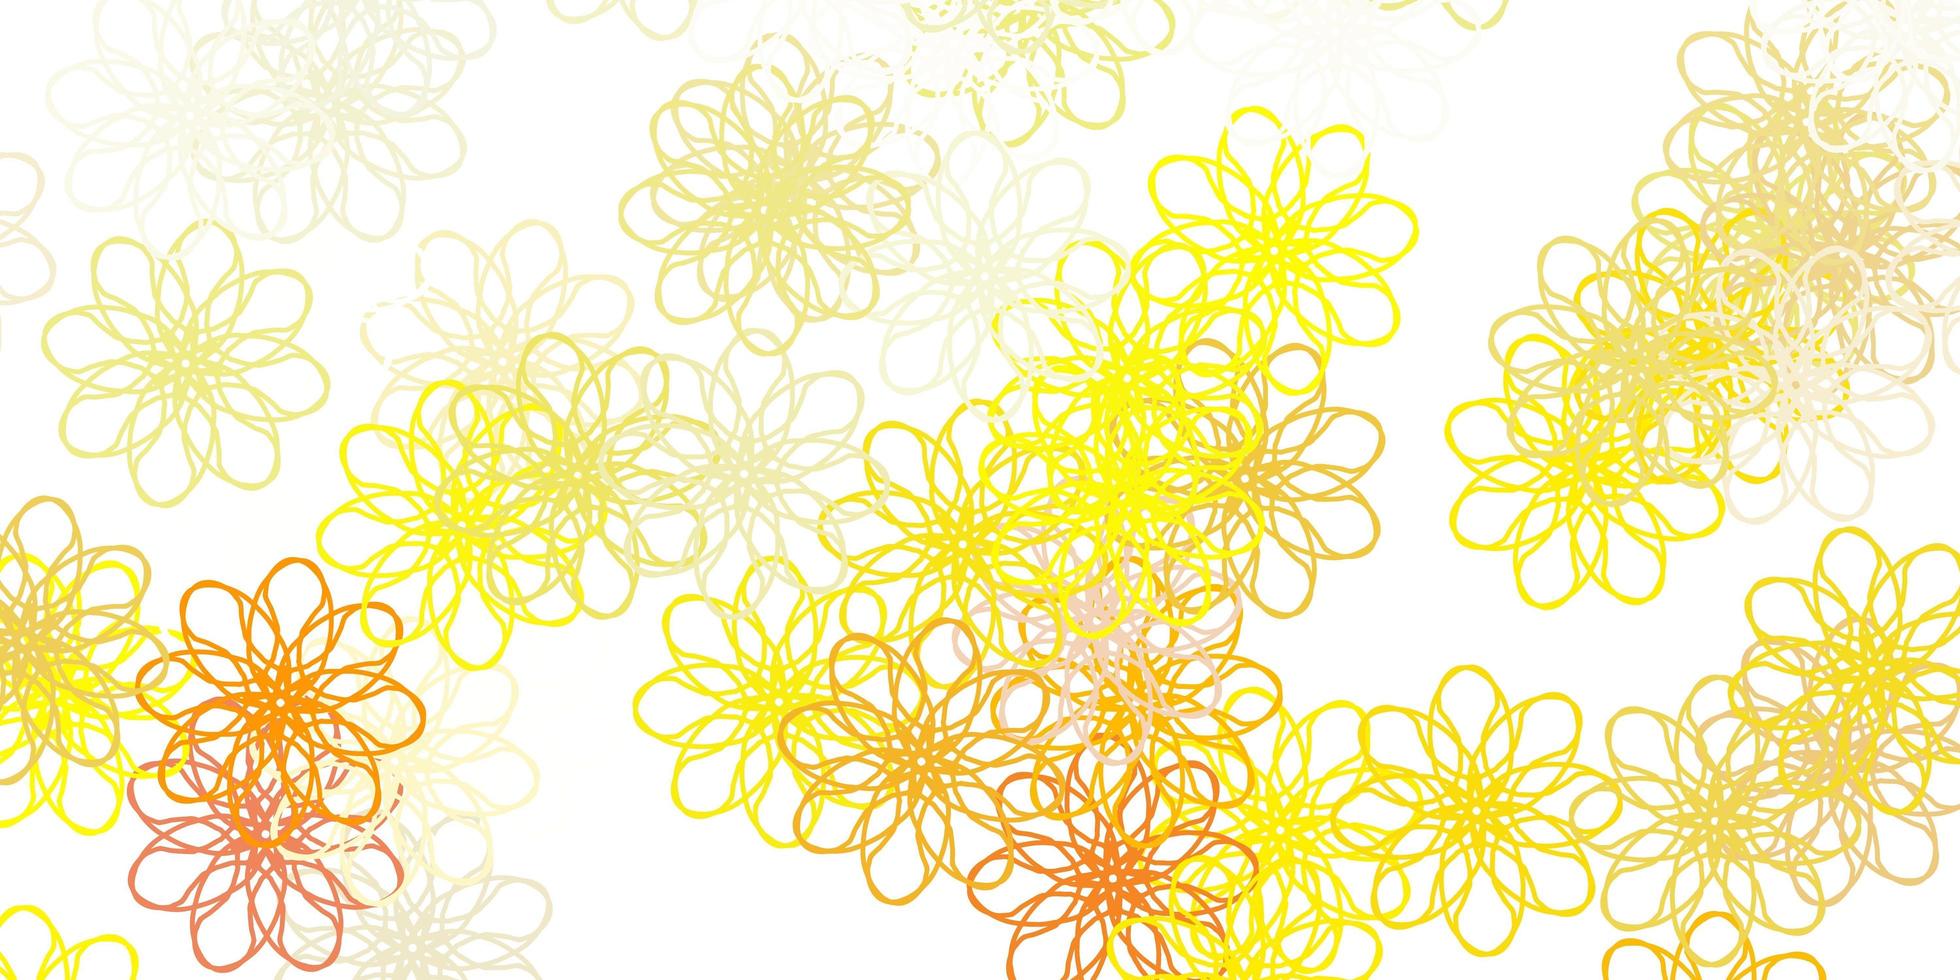 modello di doodle vettoriale arancione chiaro con fiori.